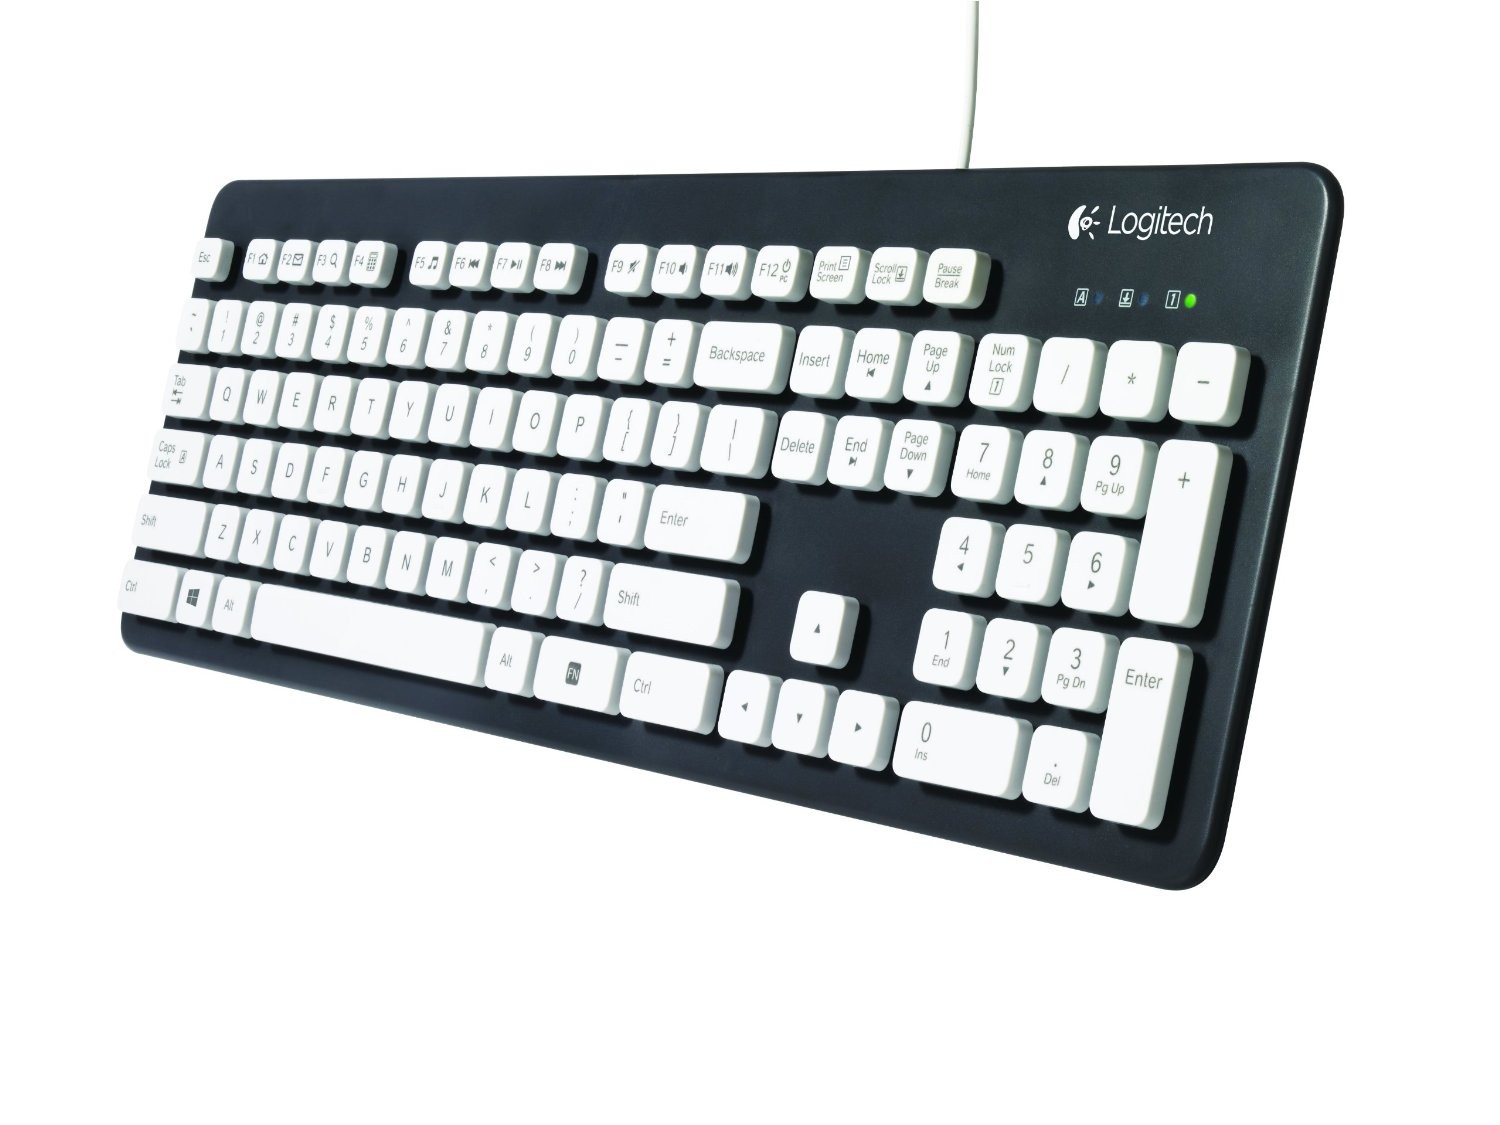 Keyboards - Keyboards  Mice - Peripherals